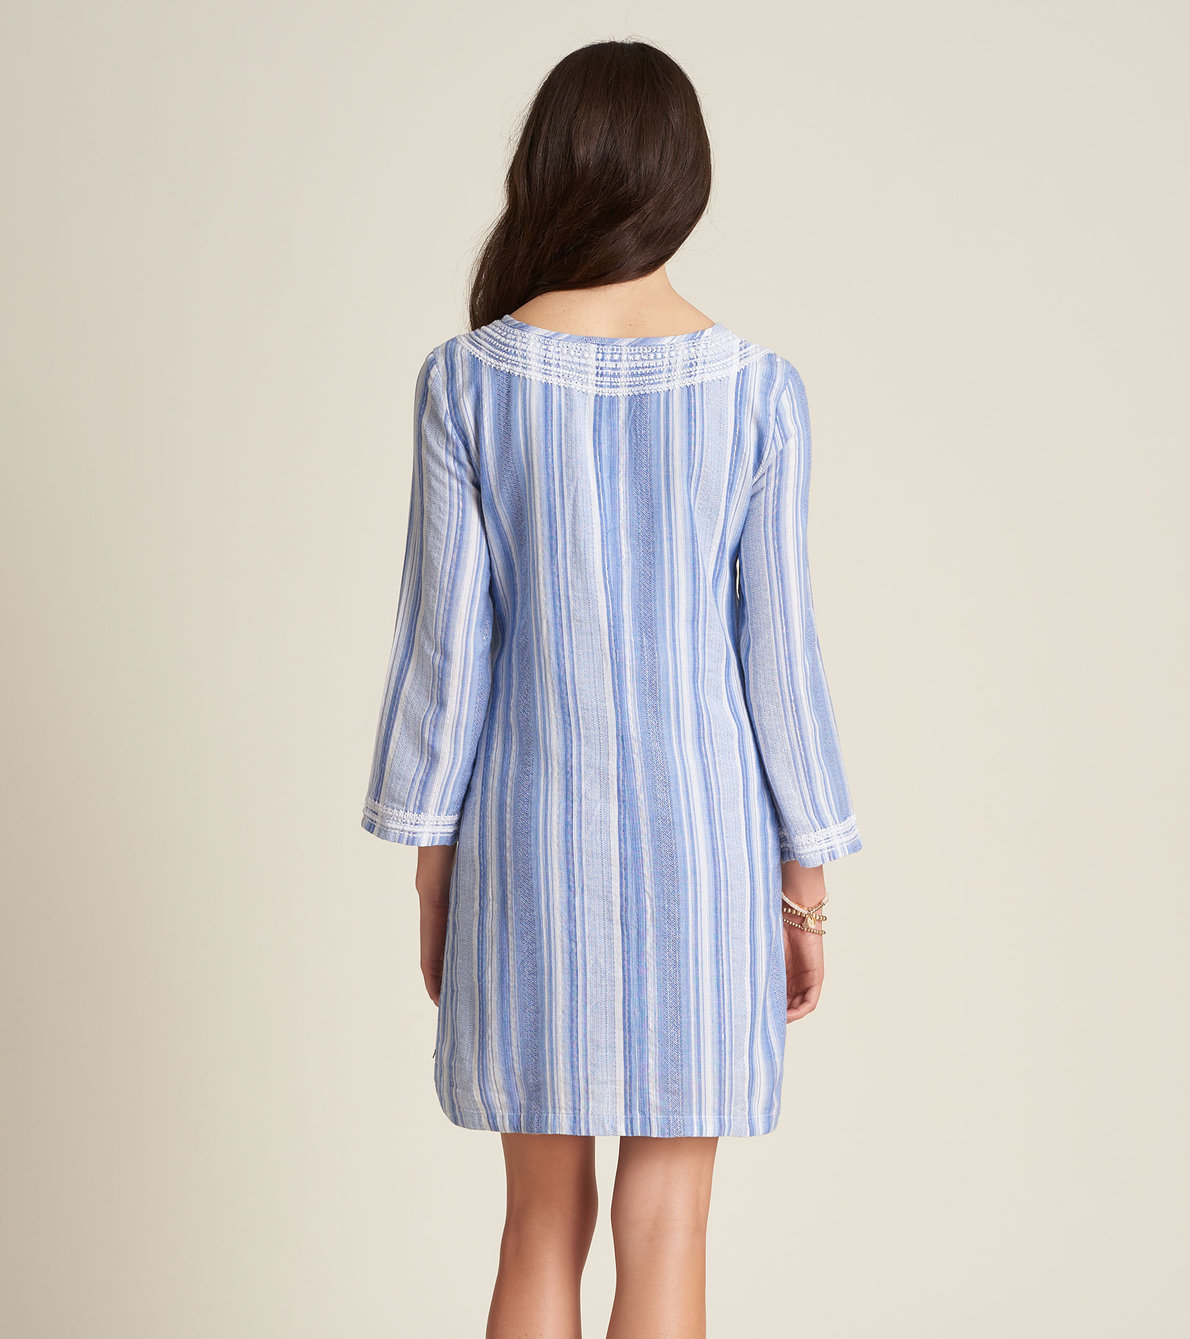 View larger image of Tori Dress - Waterside Stripes